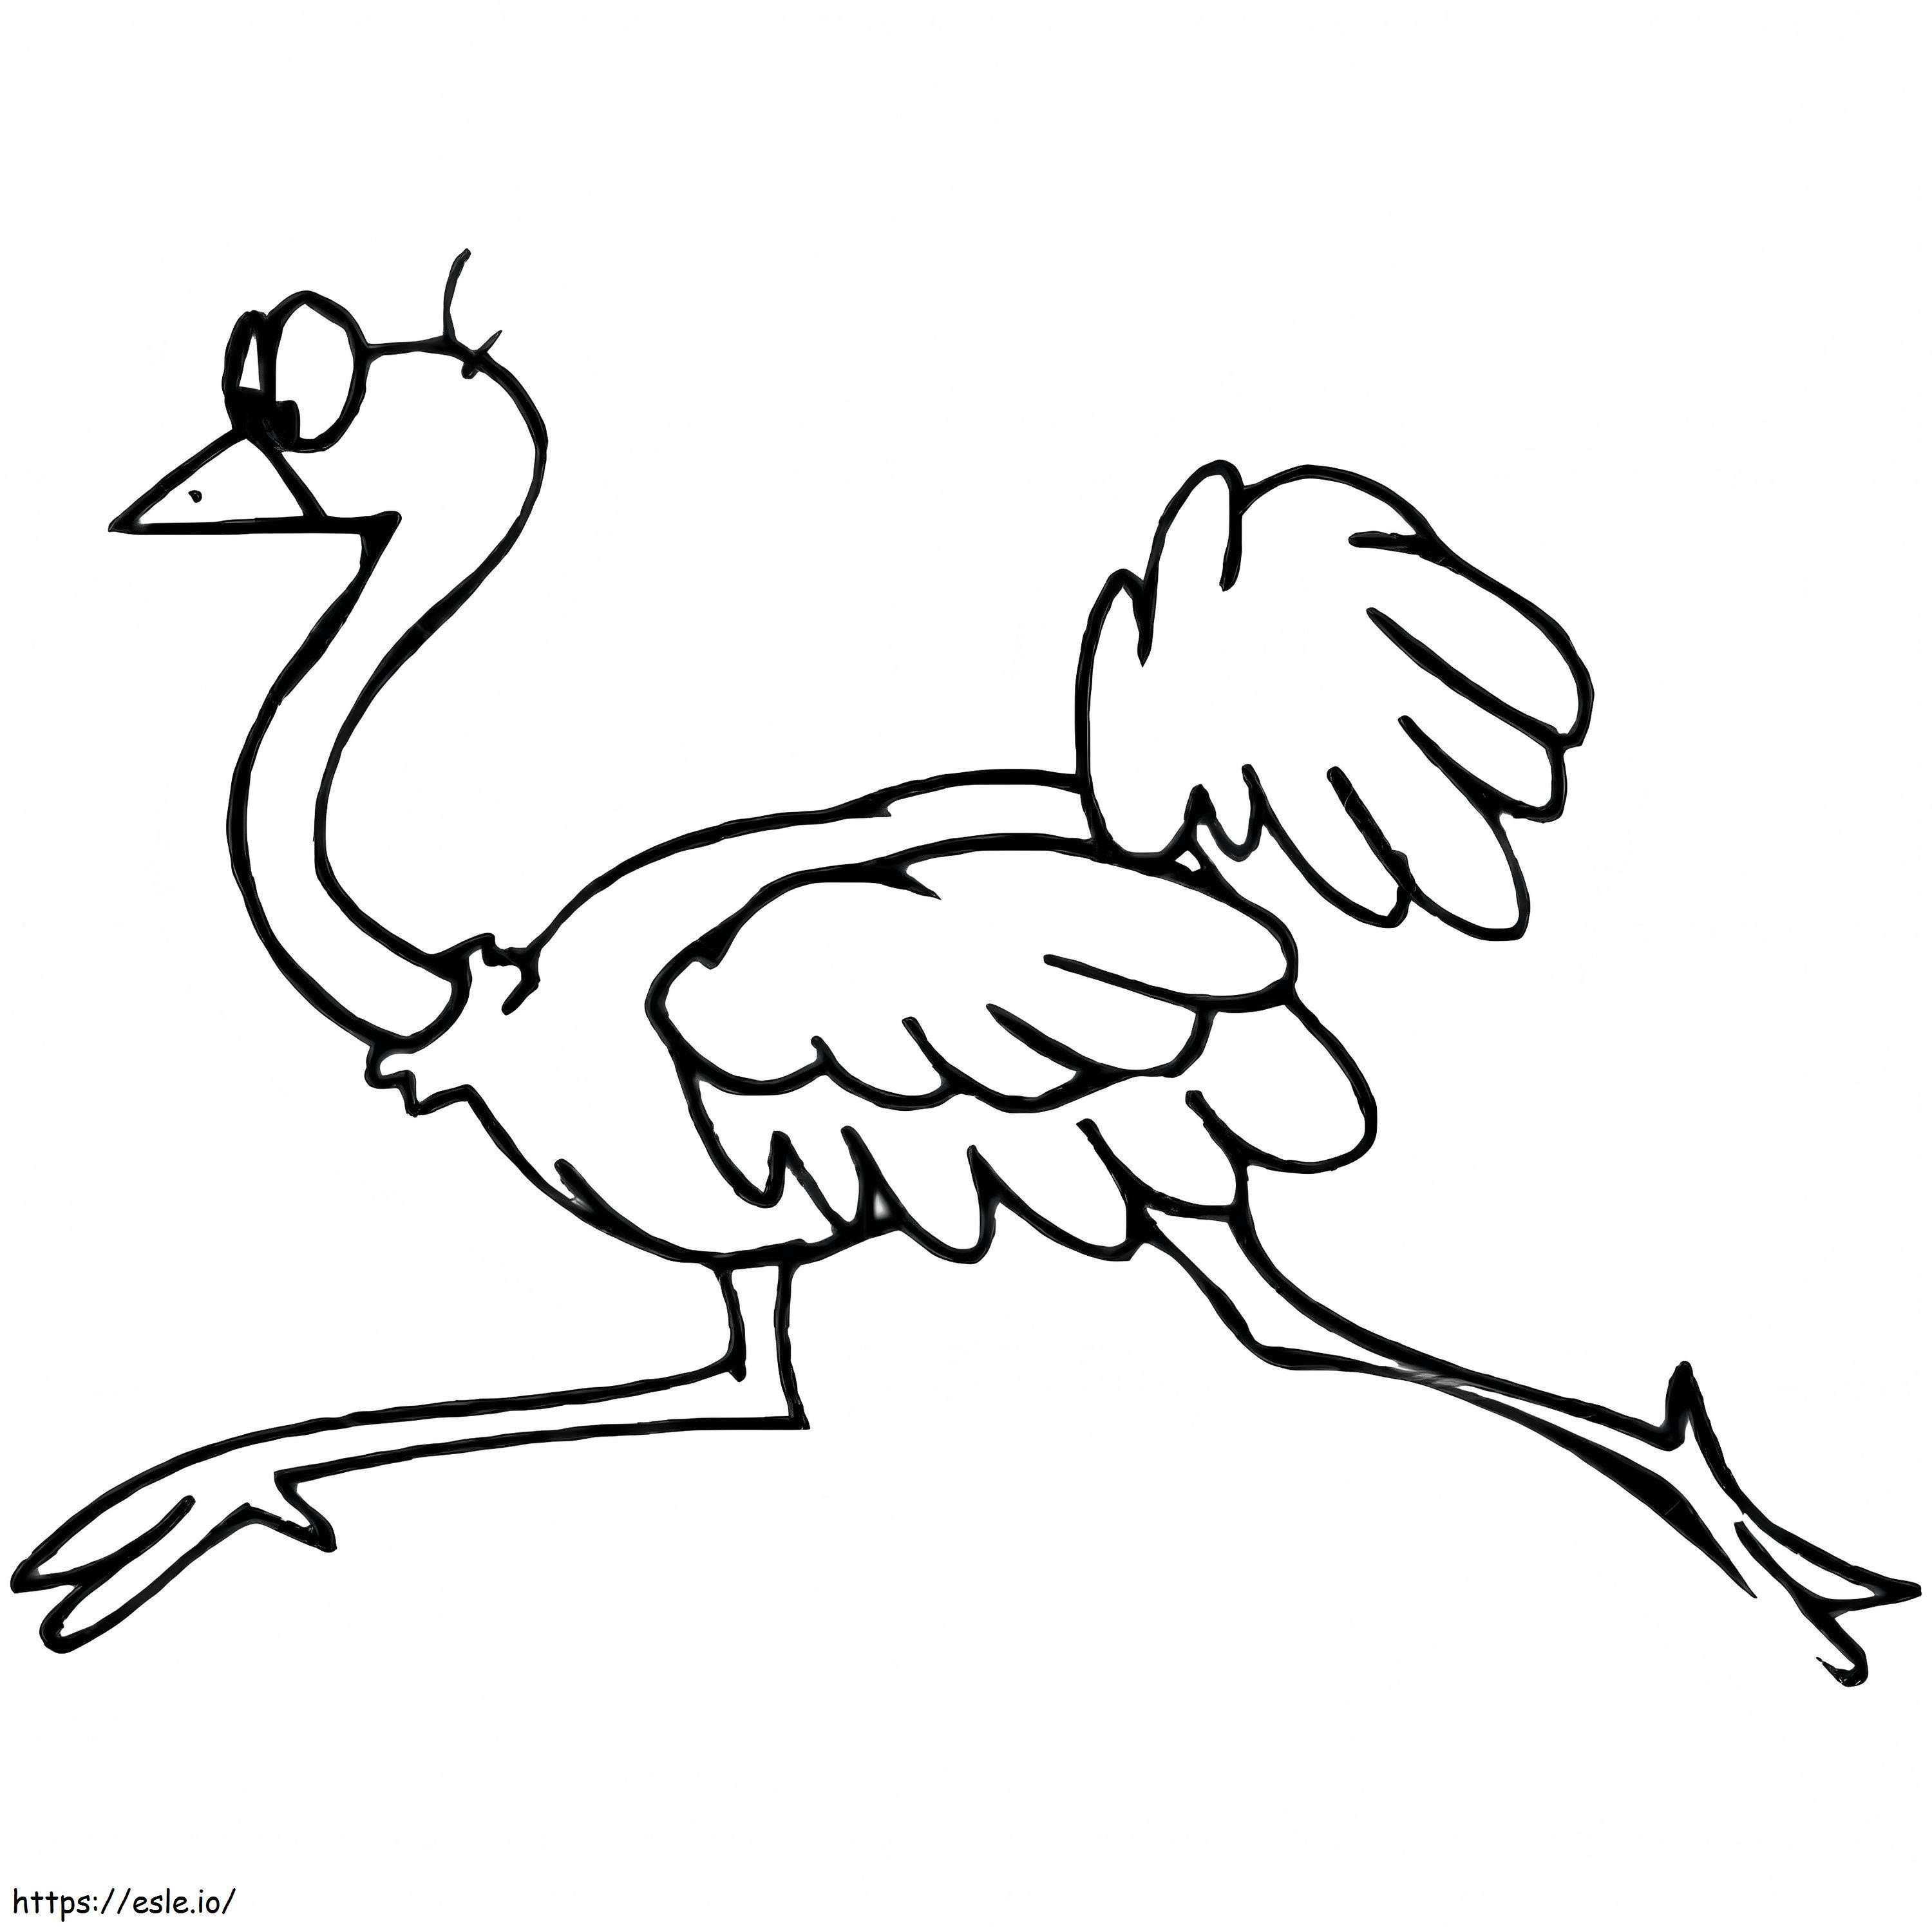 Struisvogel rennen kleurplaat kleurplaat